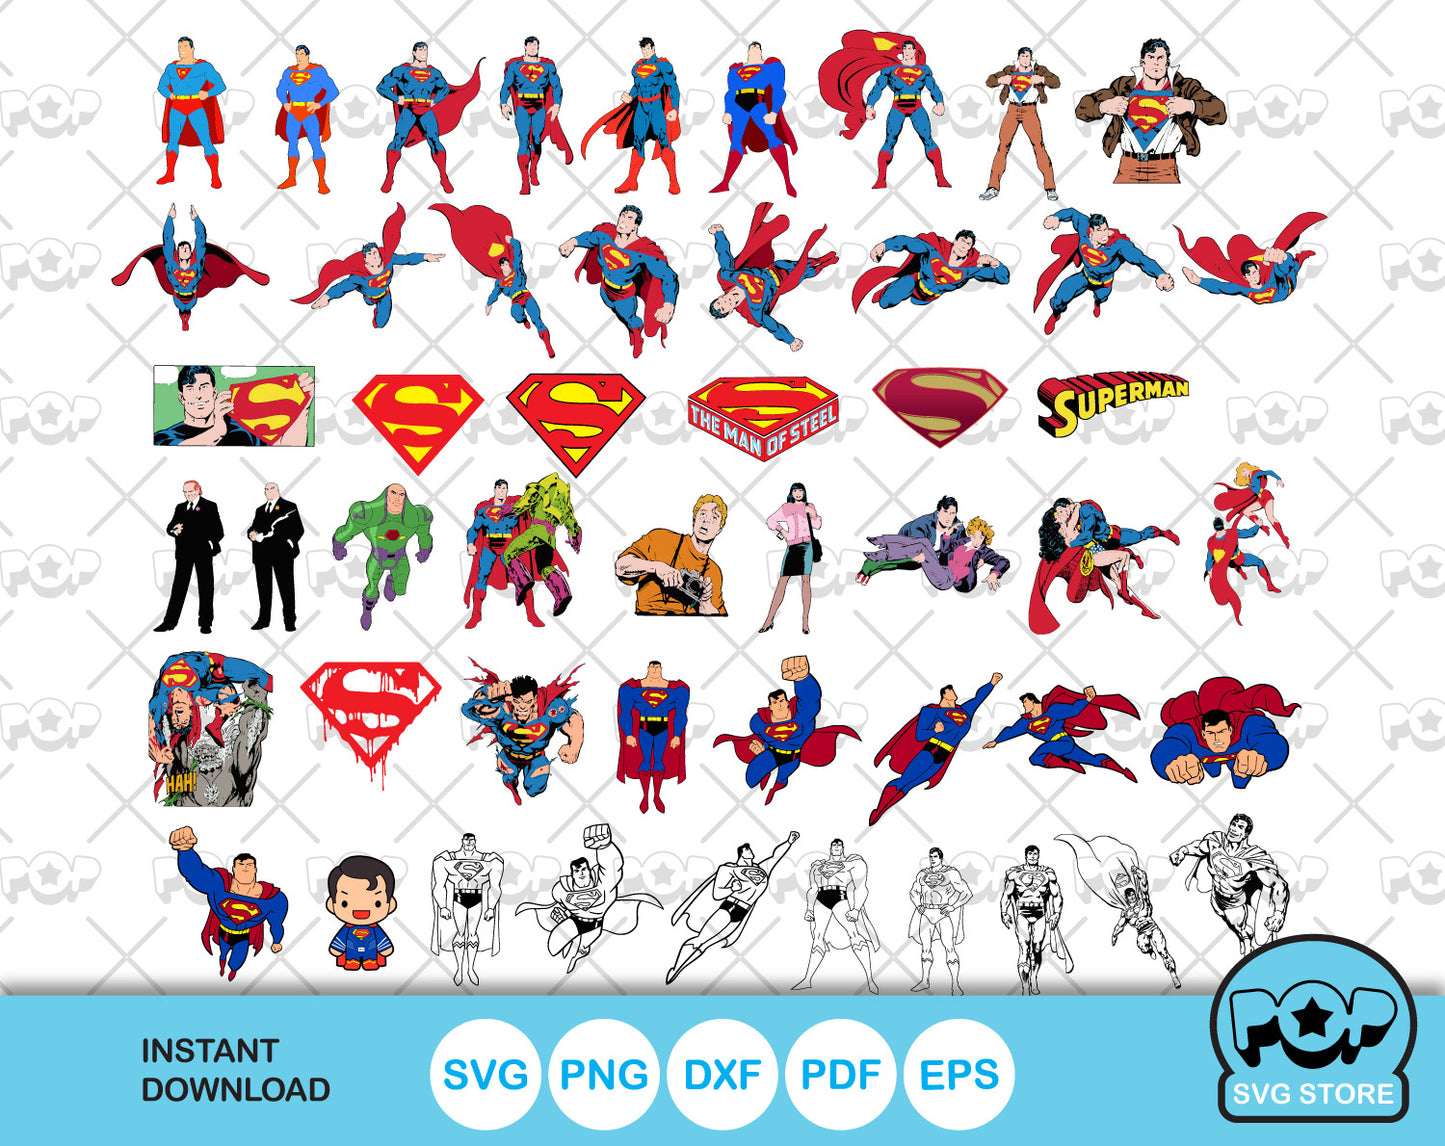 Superman 50 cliparts bundle, Superman SVG cut files for Cricut / Silhouette, PNG, DXF, instant download